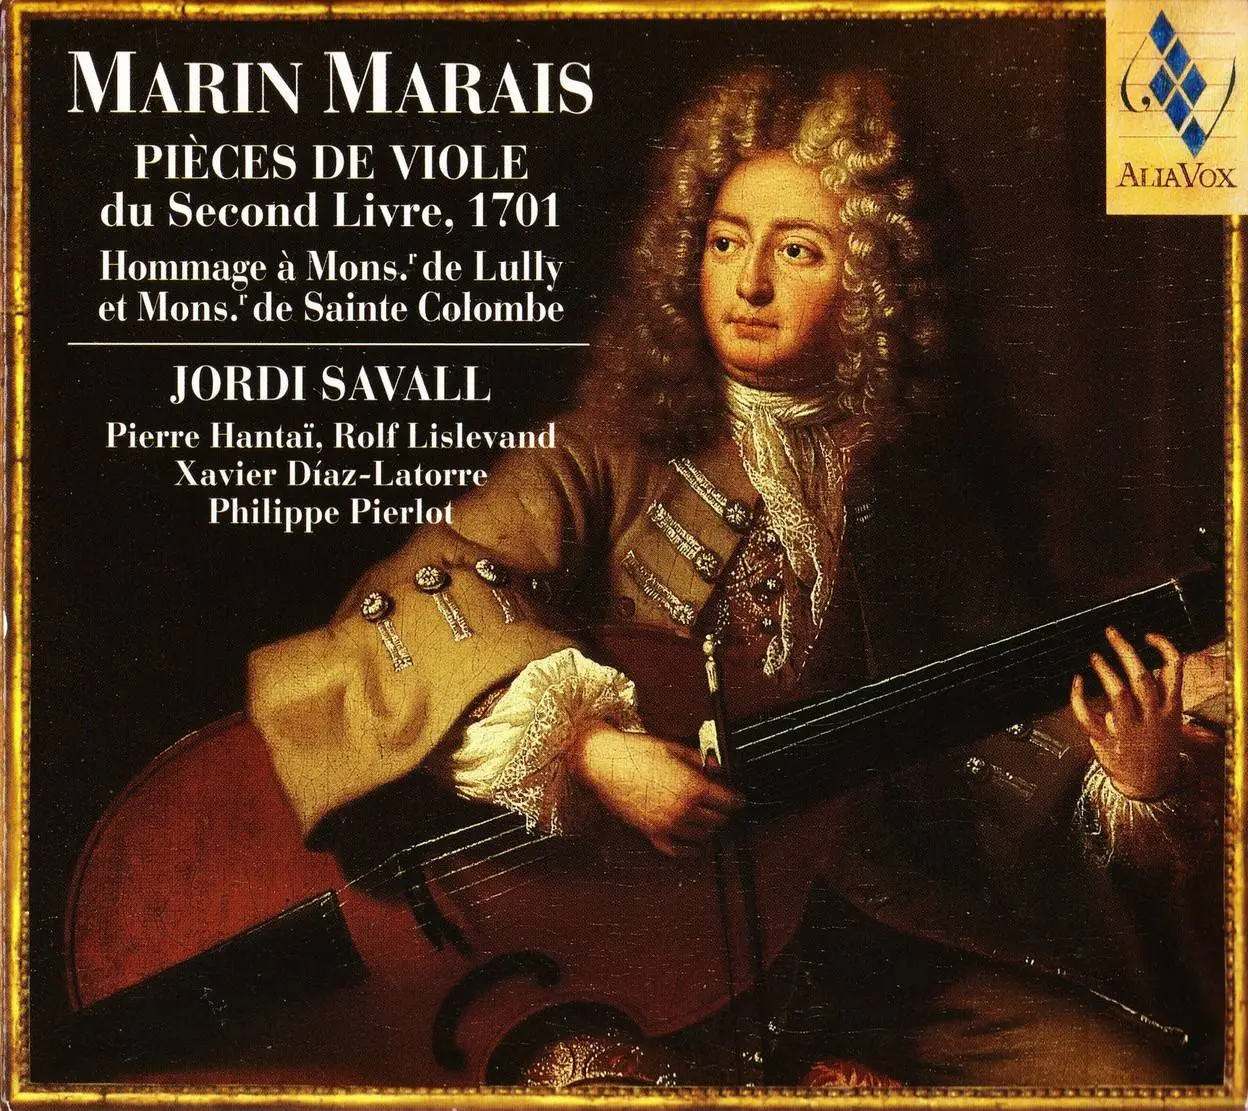 Jordi Savall - Monsieur de Sainte Colombe le fils & Marin Marais - Le ...